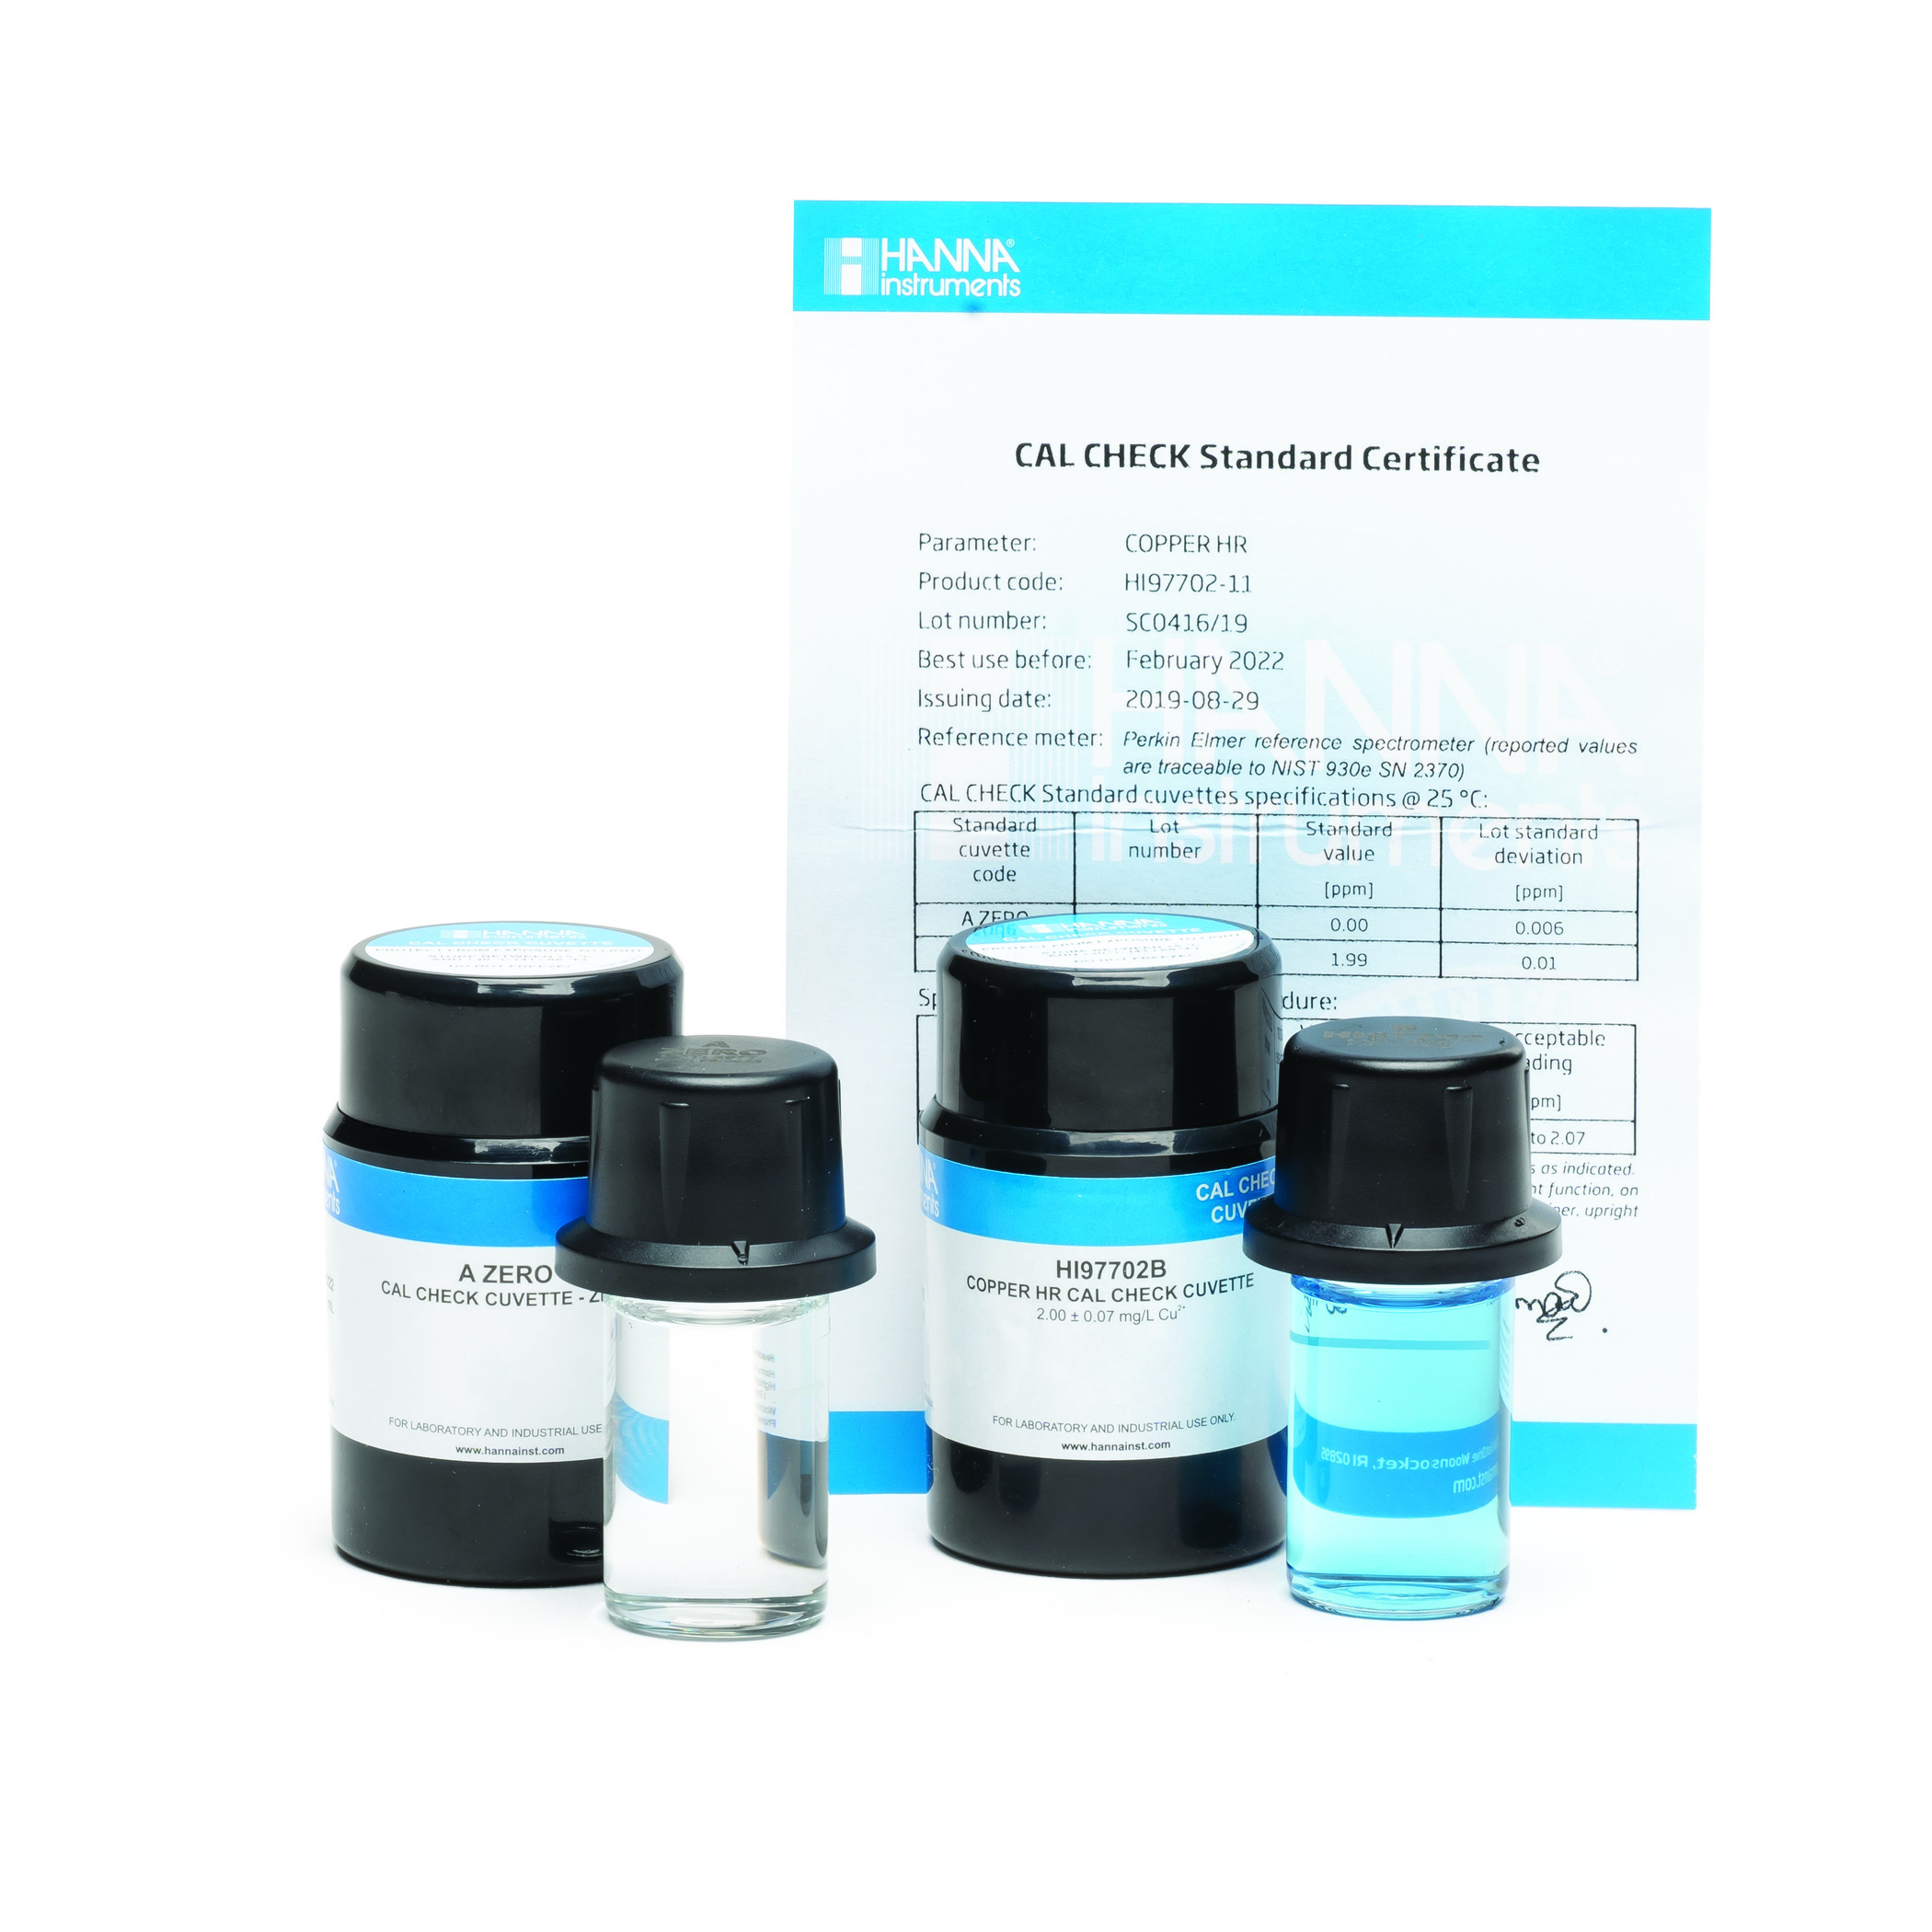 Dung dịch CAL Check™ chuẩn Cyanide dùng cho máy HI97714 HANNA HI97714-11